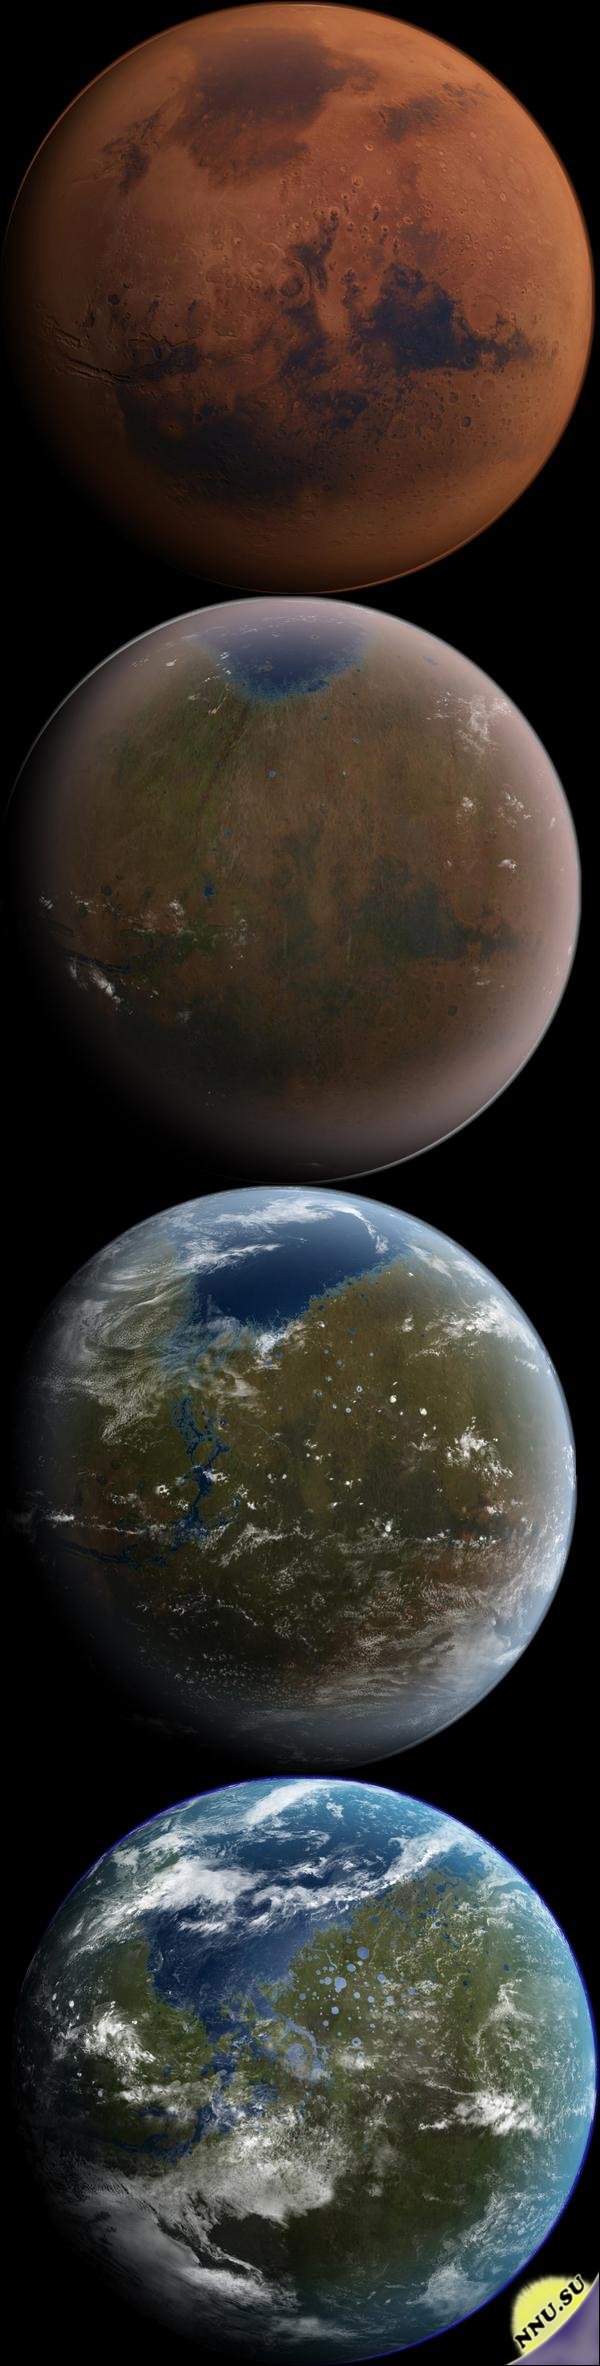 Как люди собираются решить проблему освоения Марса (2 фото + много текста)